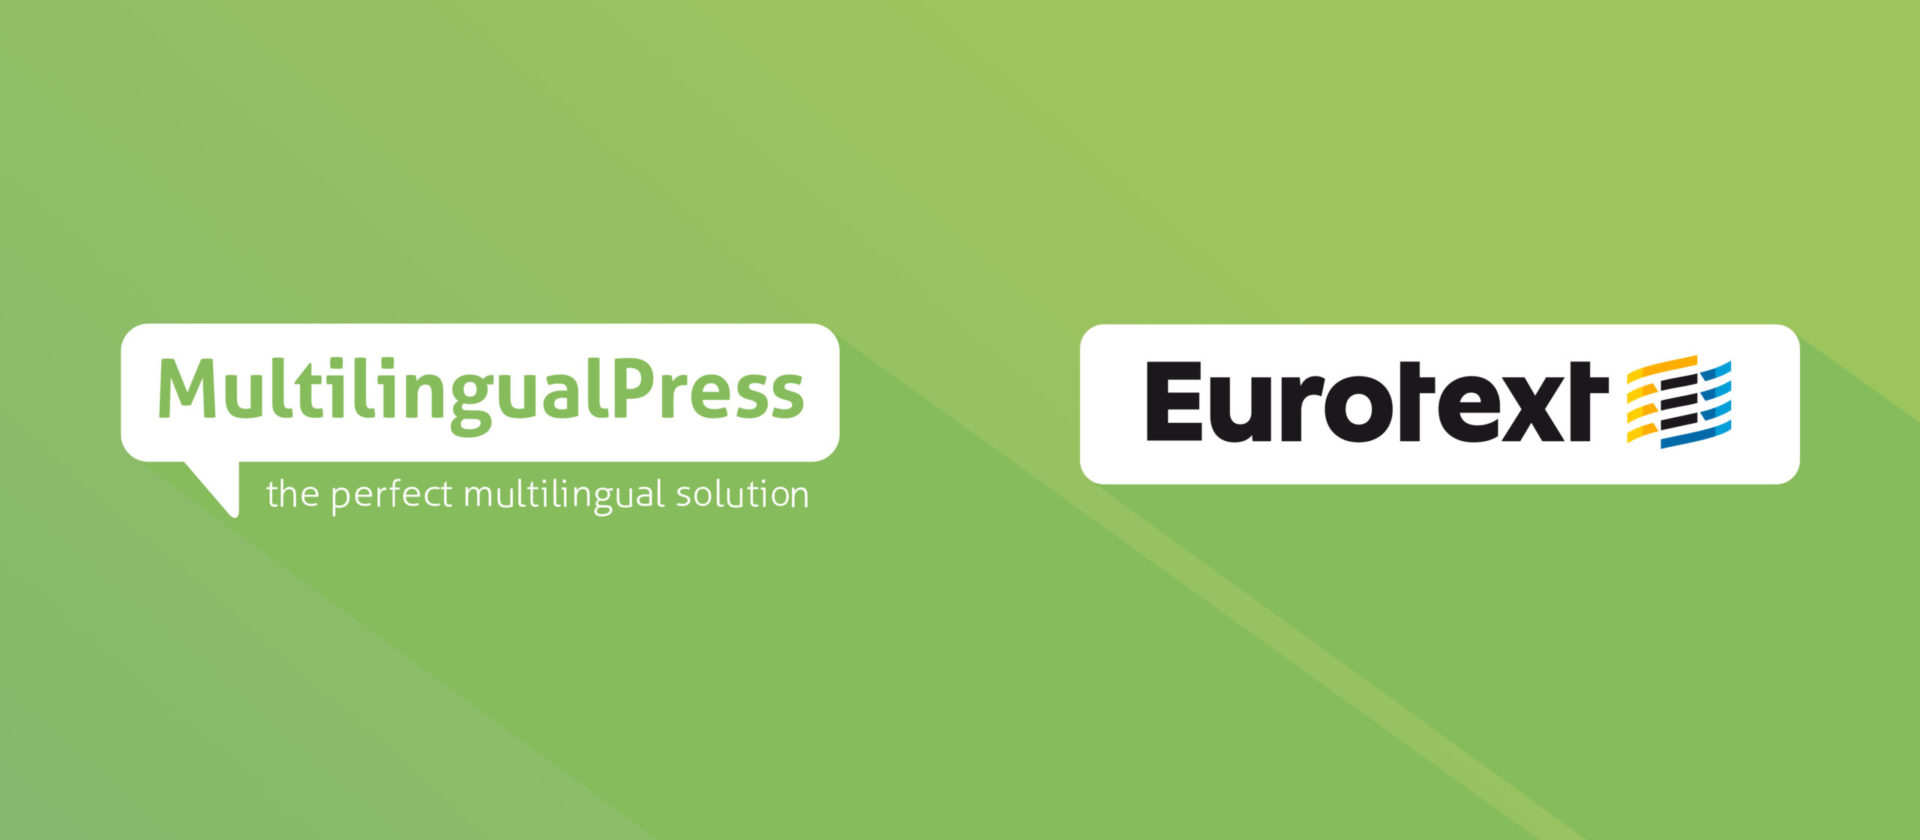 WordPress mehrsprachig machen und Texte übersetzen lassen mit Inpsyde und der Übersetzungsagentur Eurotext.